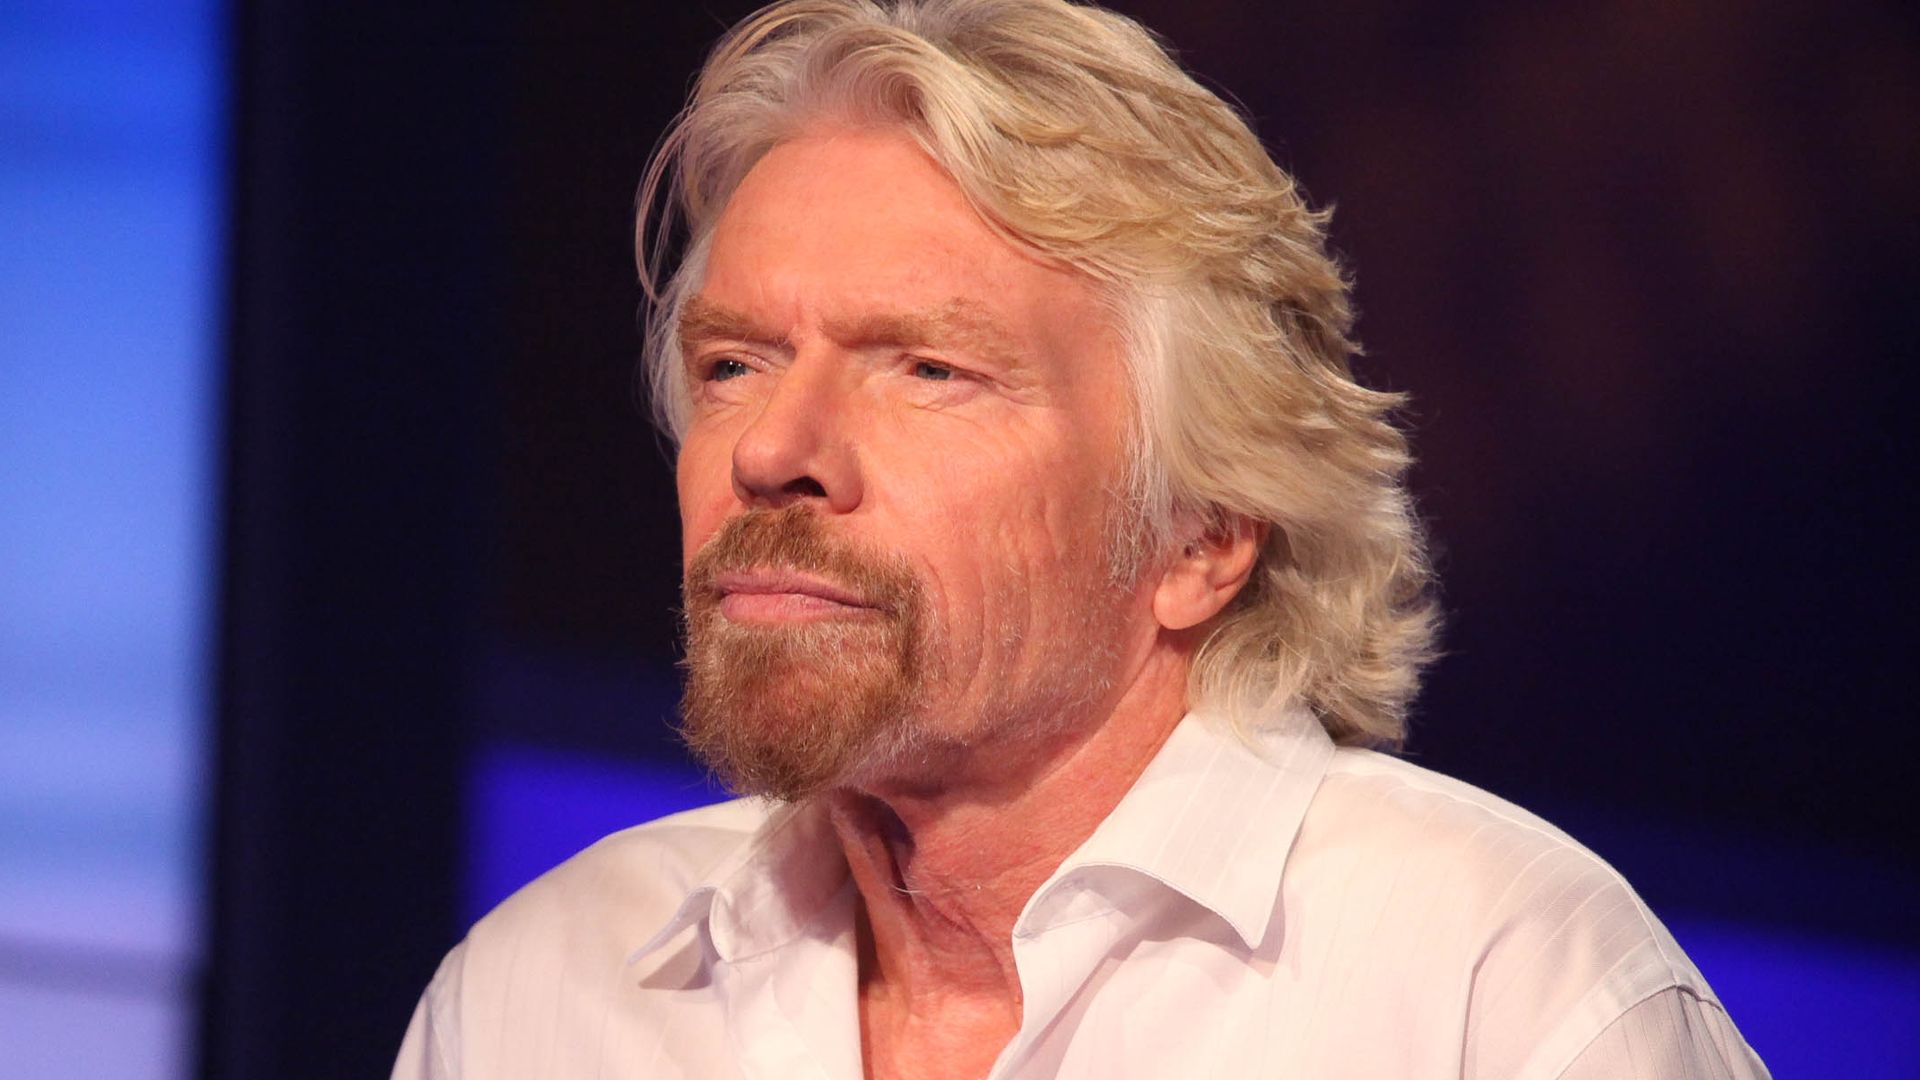 Sir Richard Branson in a white shirt